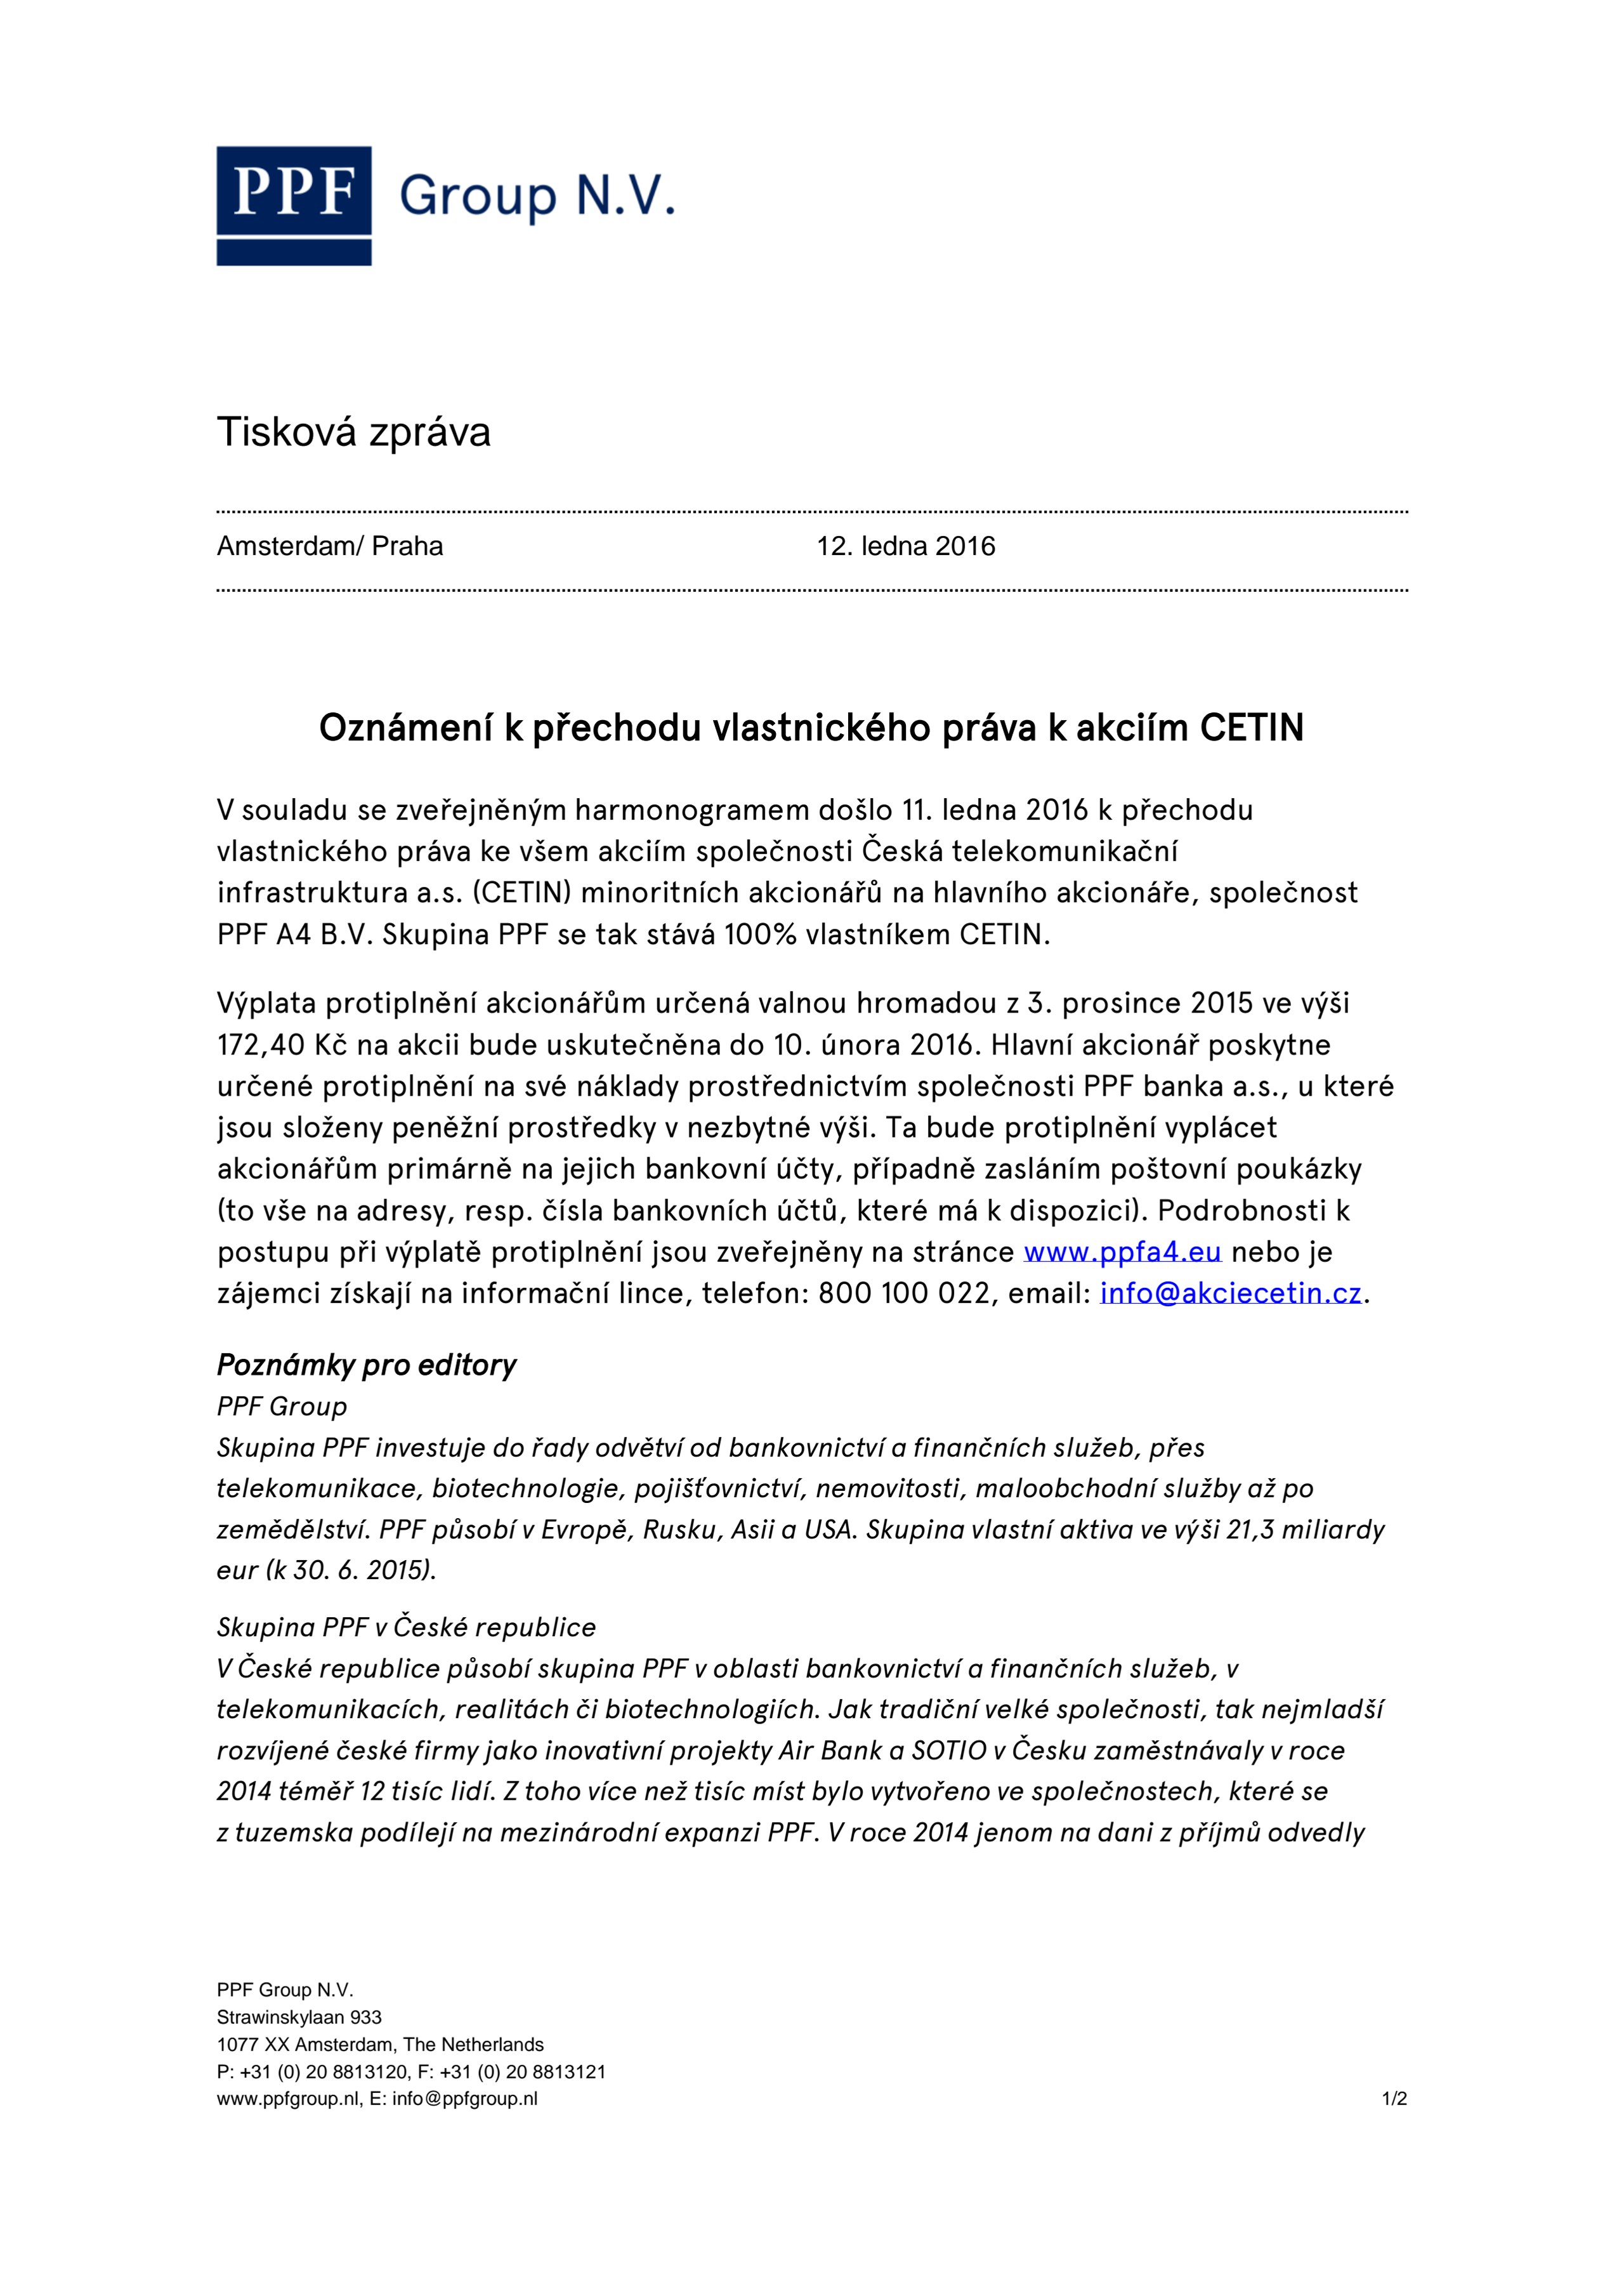 Tisková zpráva: Oznámení k přechodu vlastnického práva k akciím CETIN